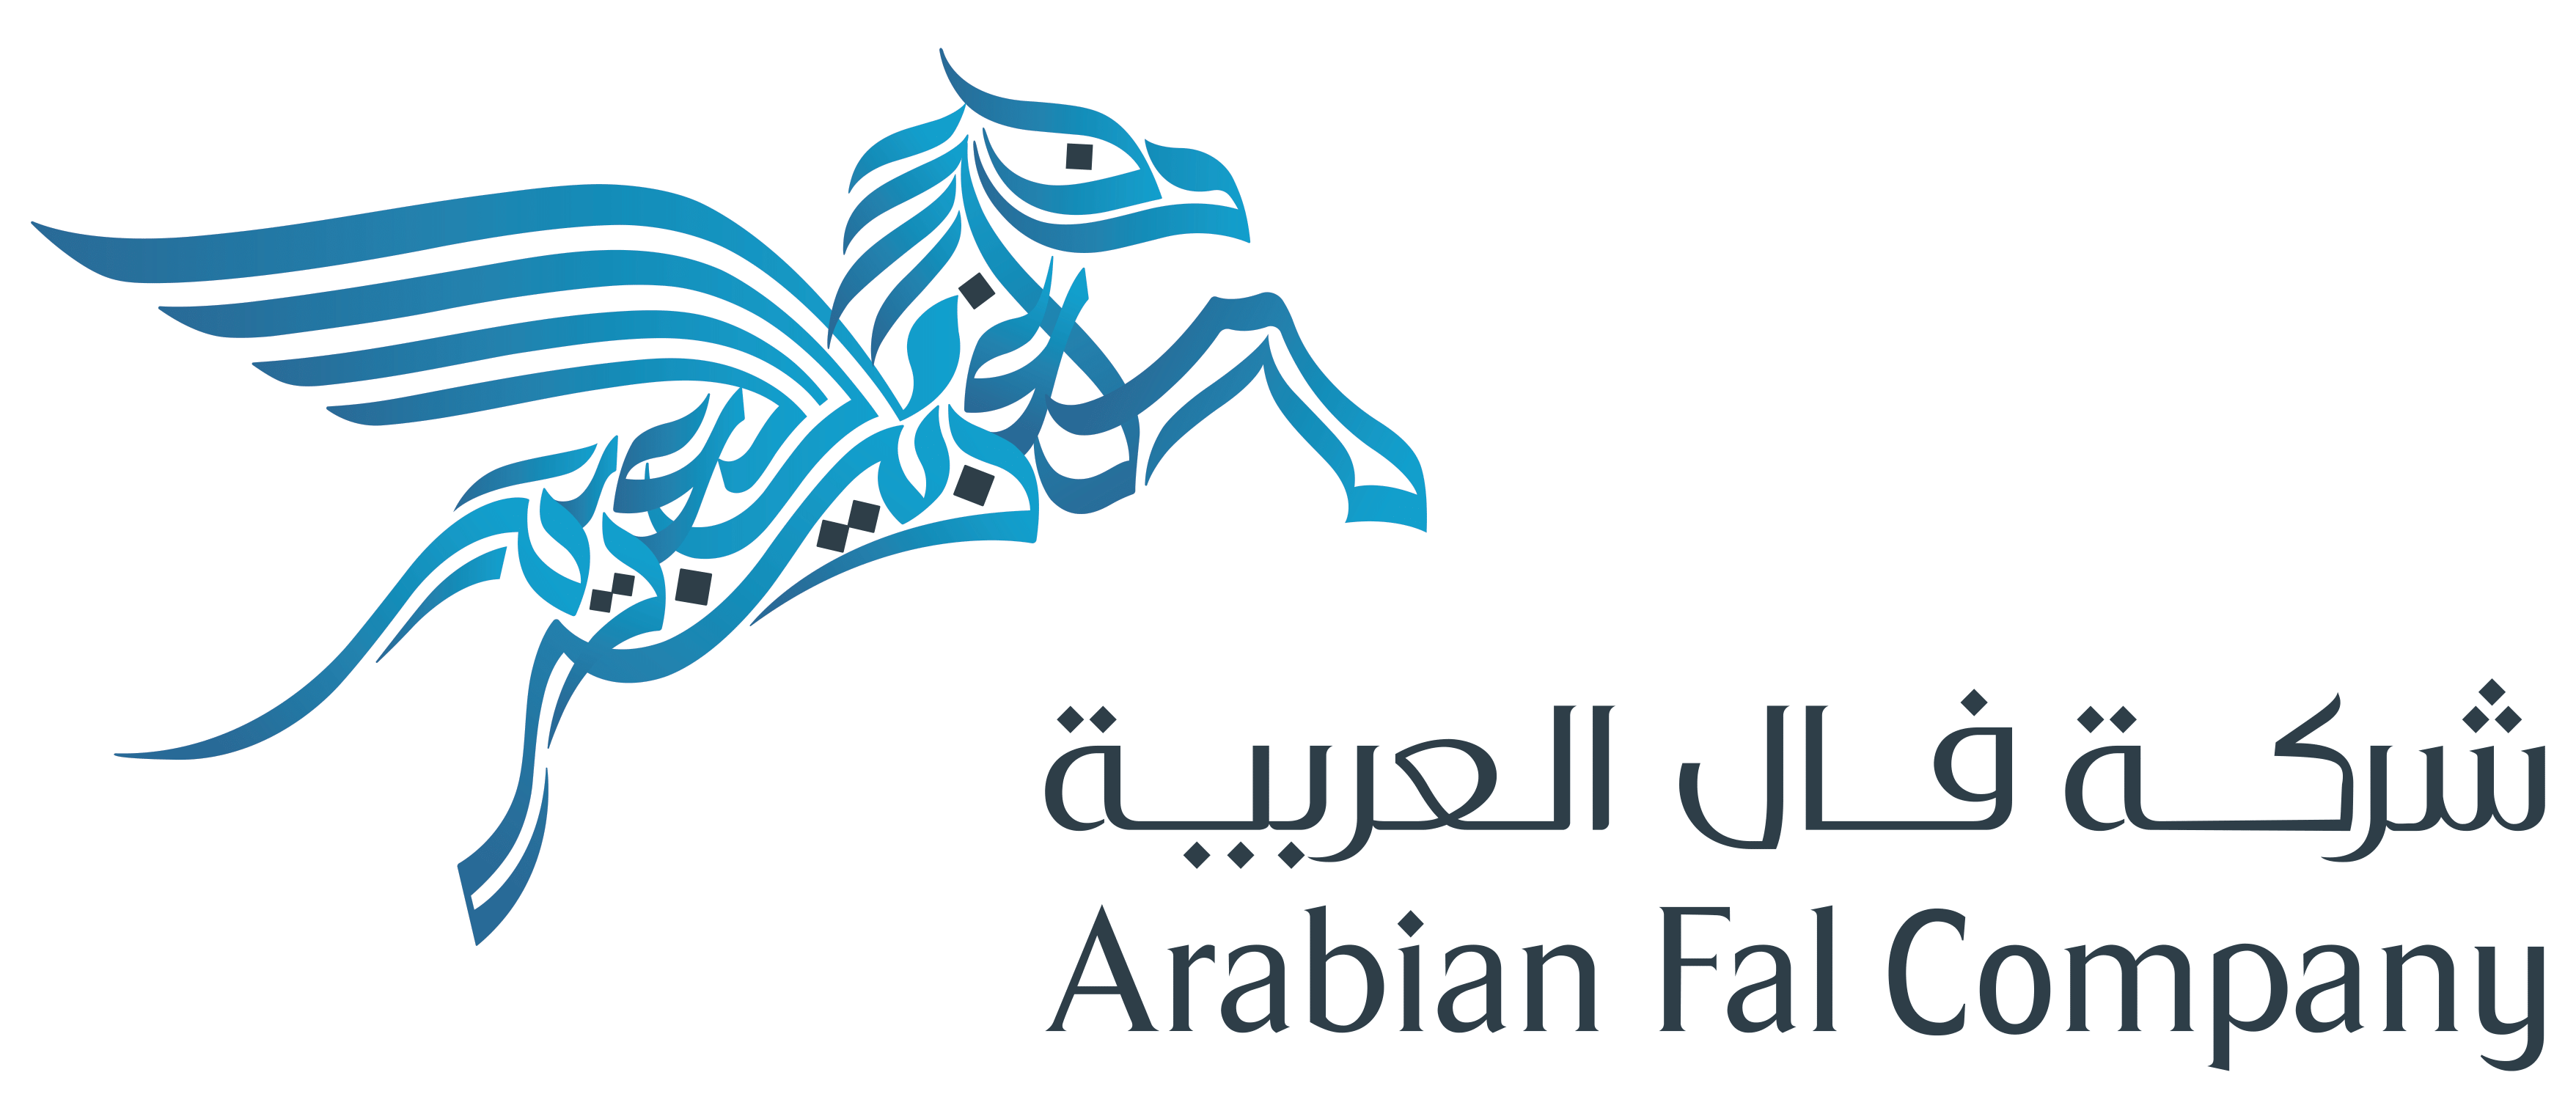 Arabian fal